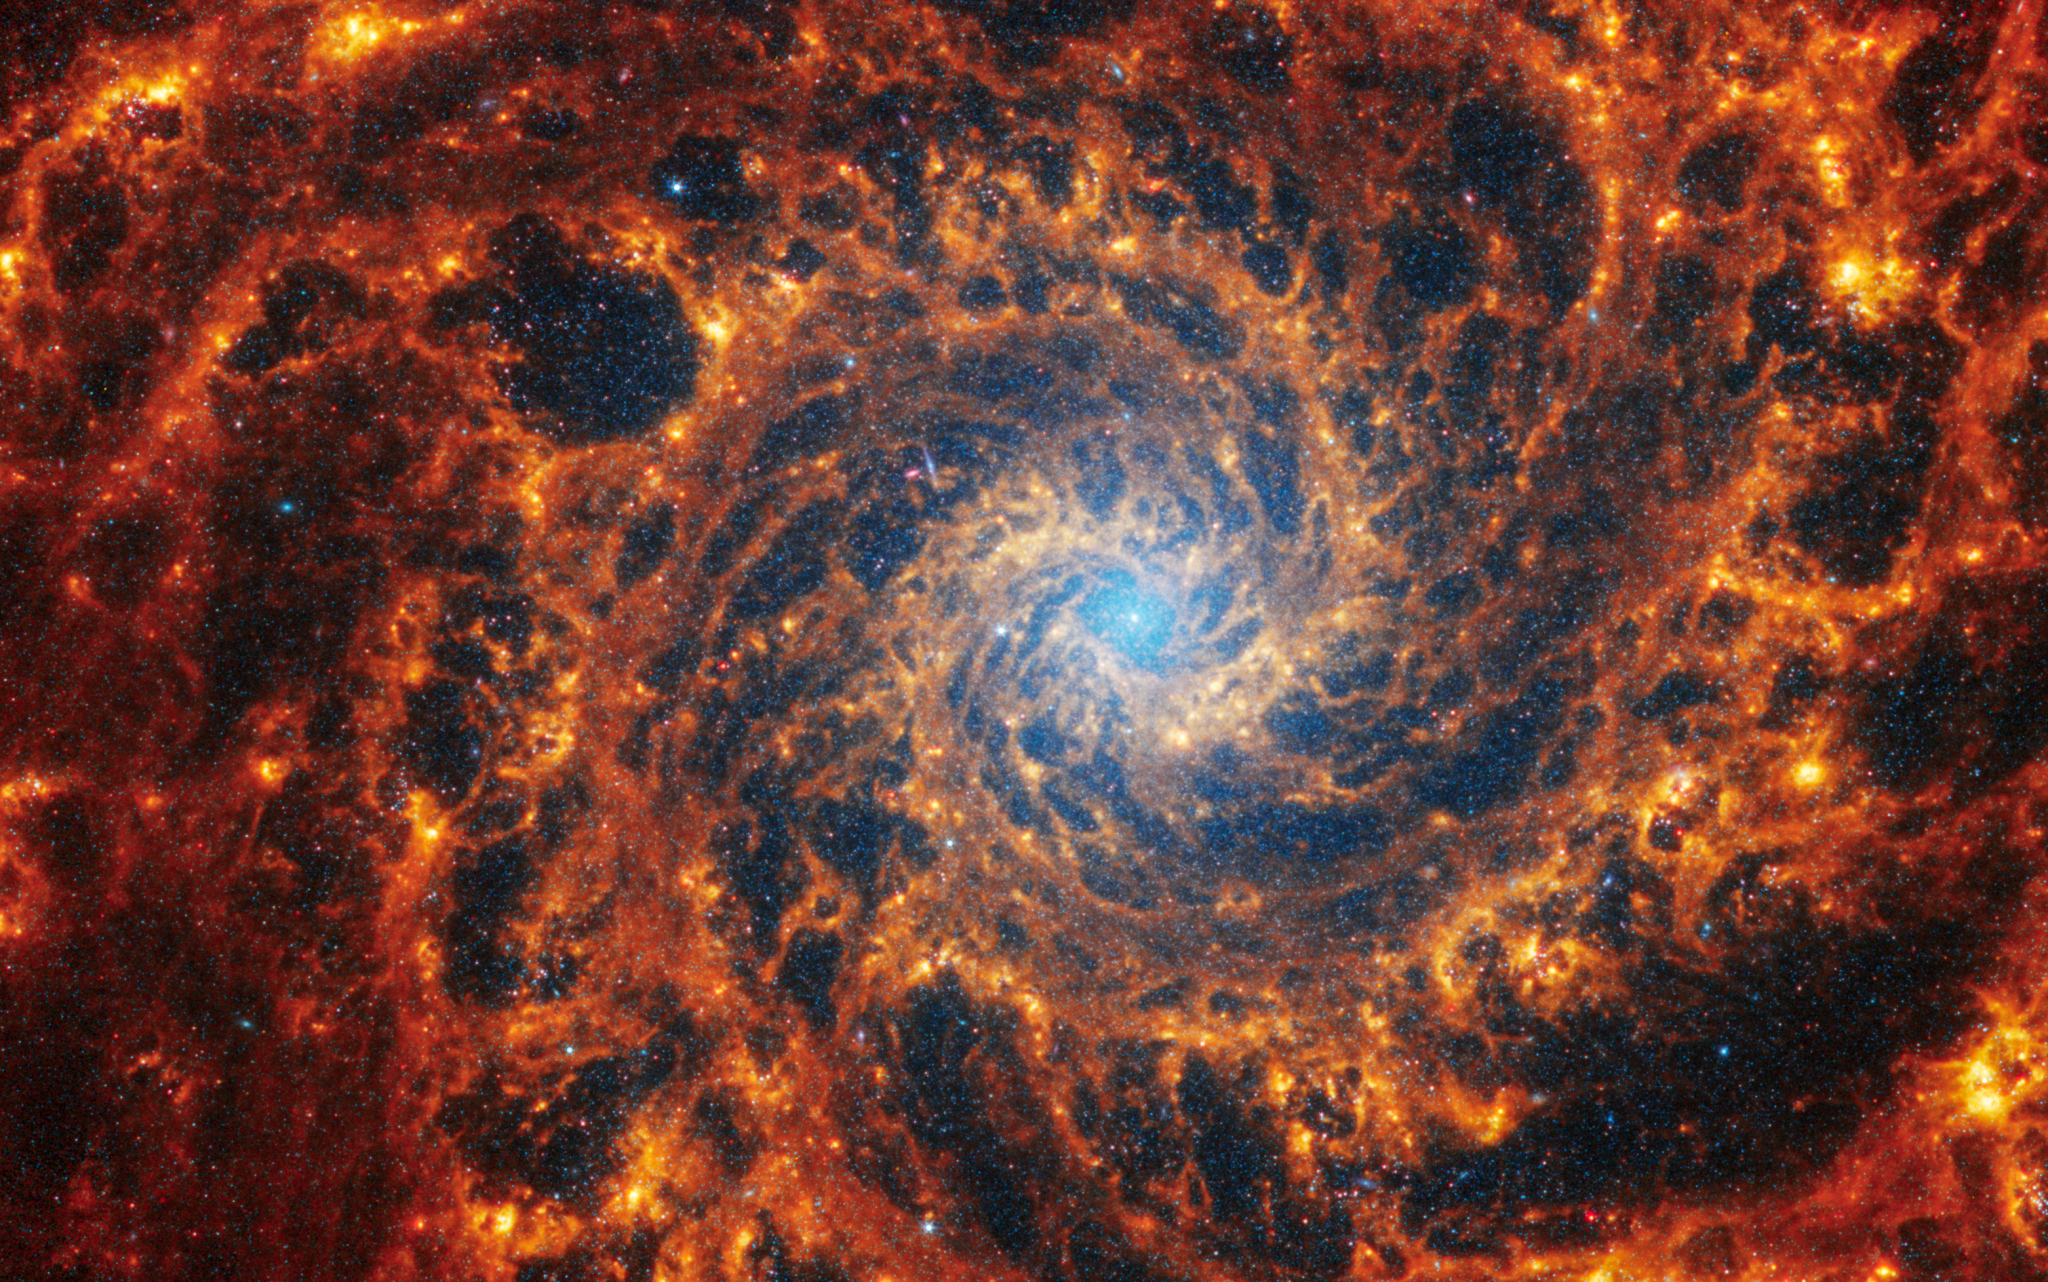 Esta imagen captada por el telescopio espacial James Webb ofrece una impresionante vista frontal de la galaxia espiral NGC 628, situada a 32 millones de años luz en la constelación de Piscis. El núcleo central se destaca con una luminosa neblina de color azul claro, abarcando una cuarta parte de la imagen, donde se concentra el brillo más intenso. 